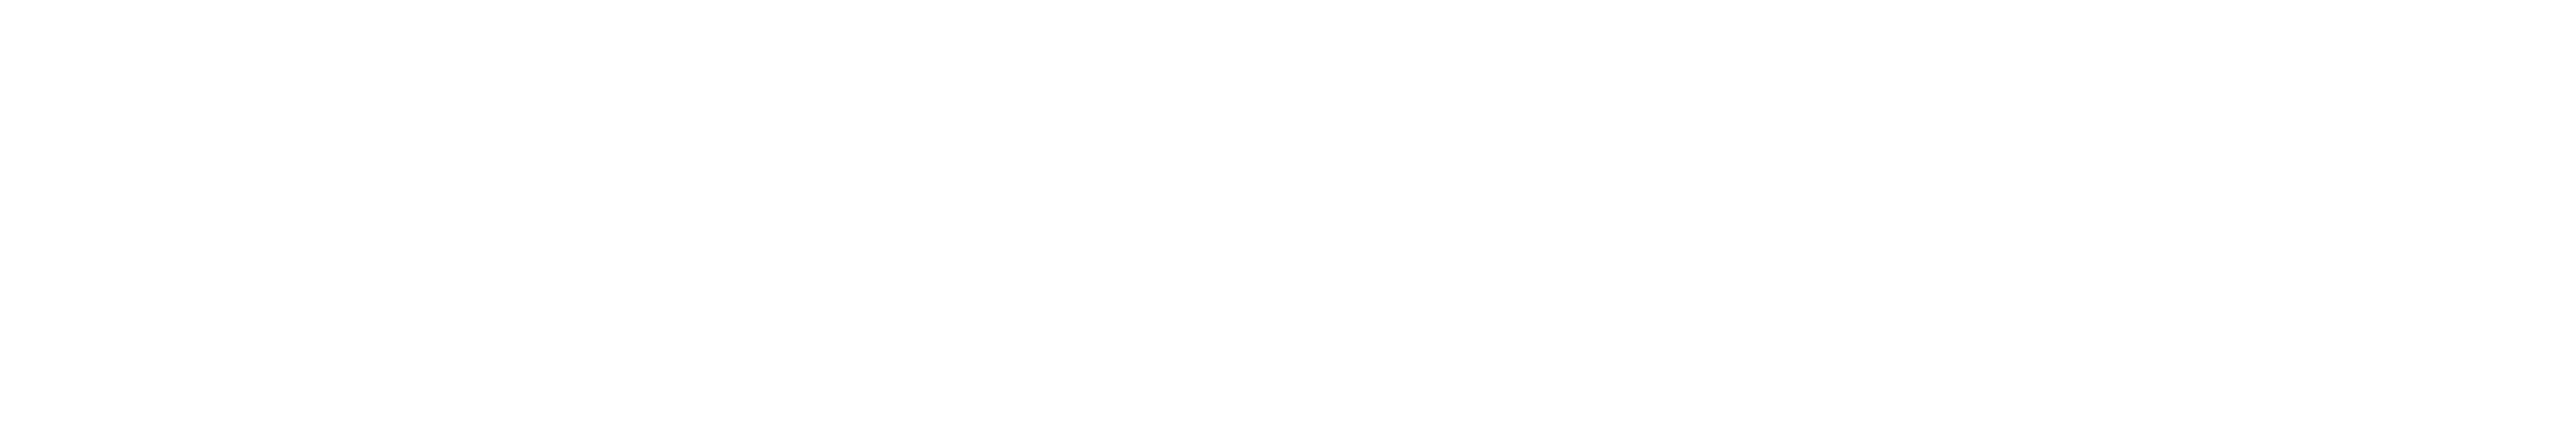 MetaAirdrop Brand